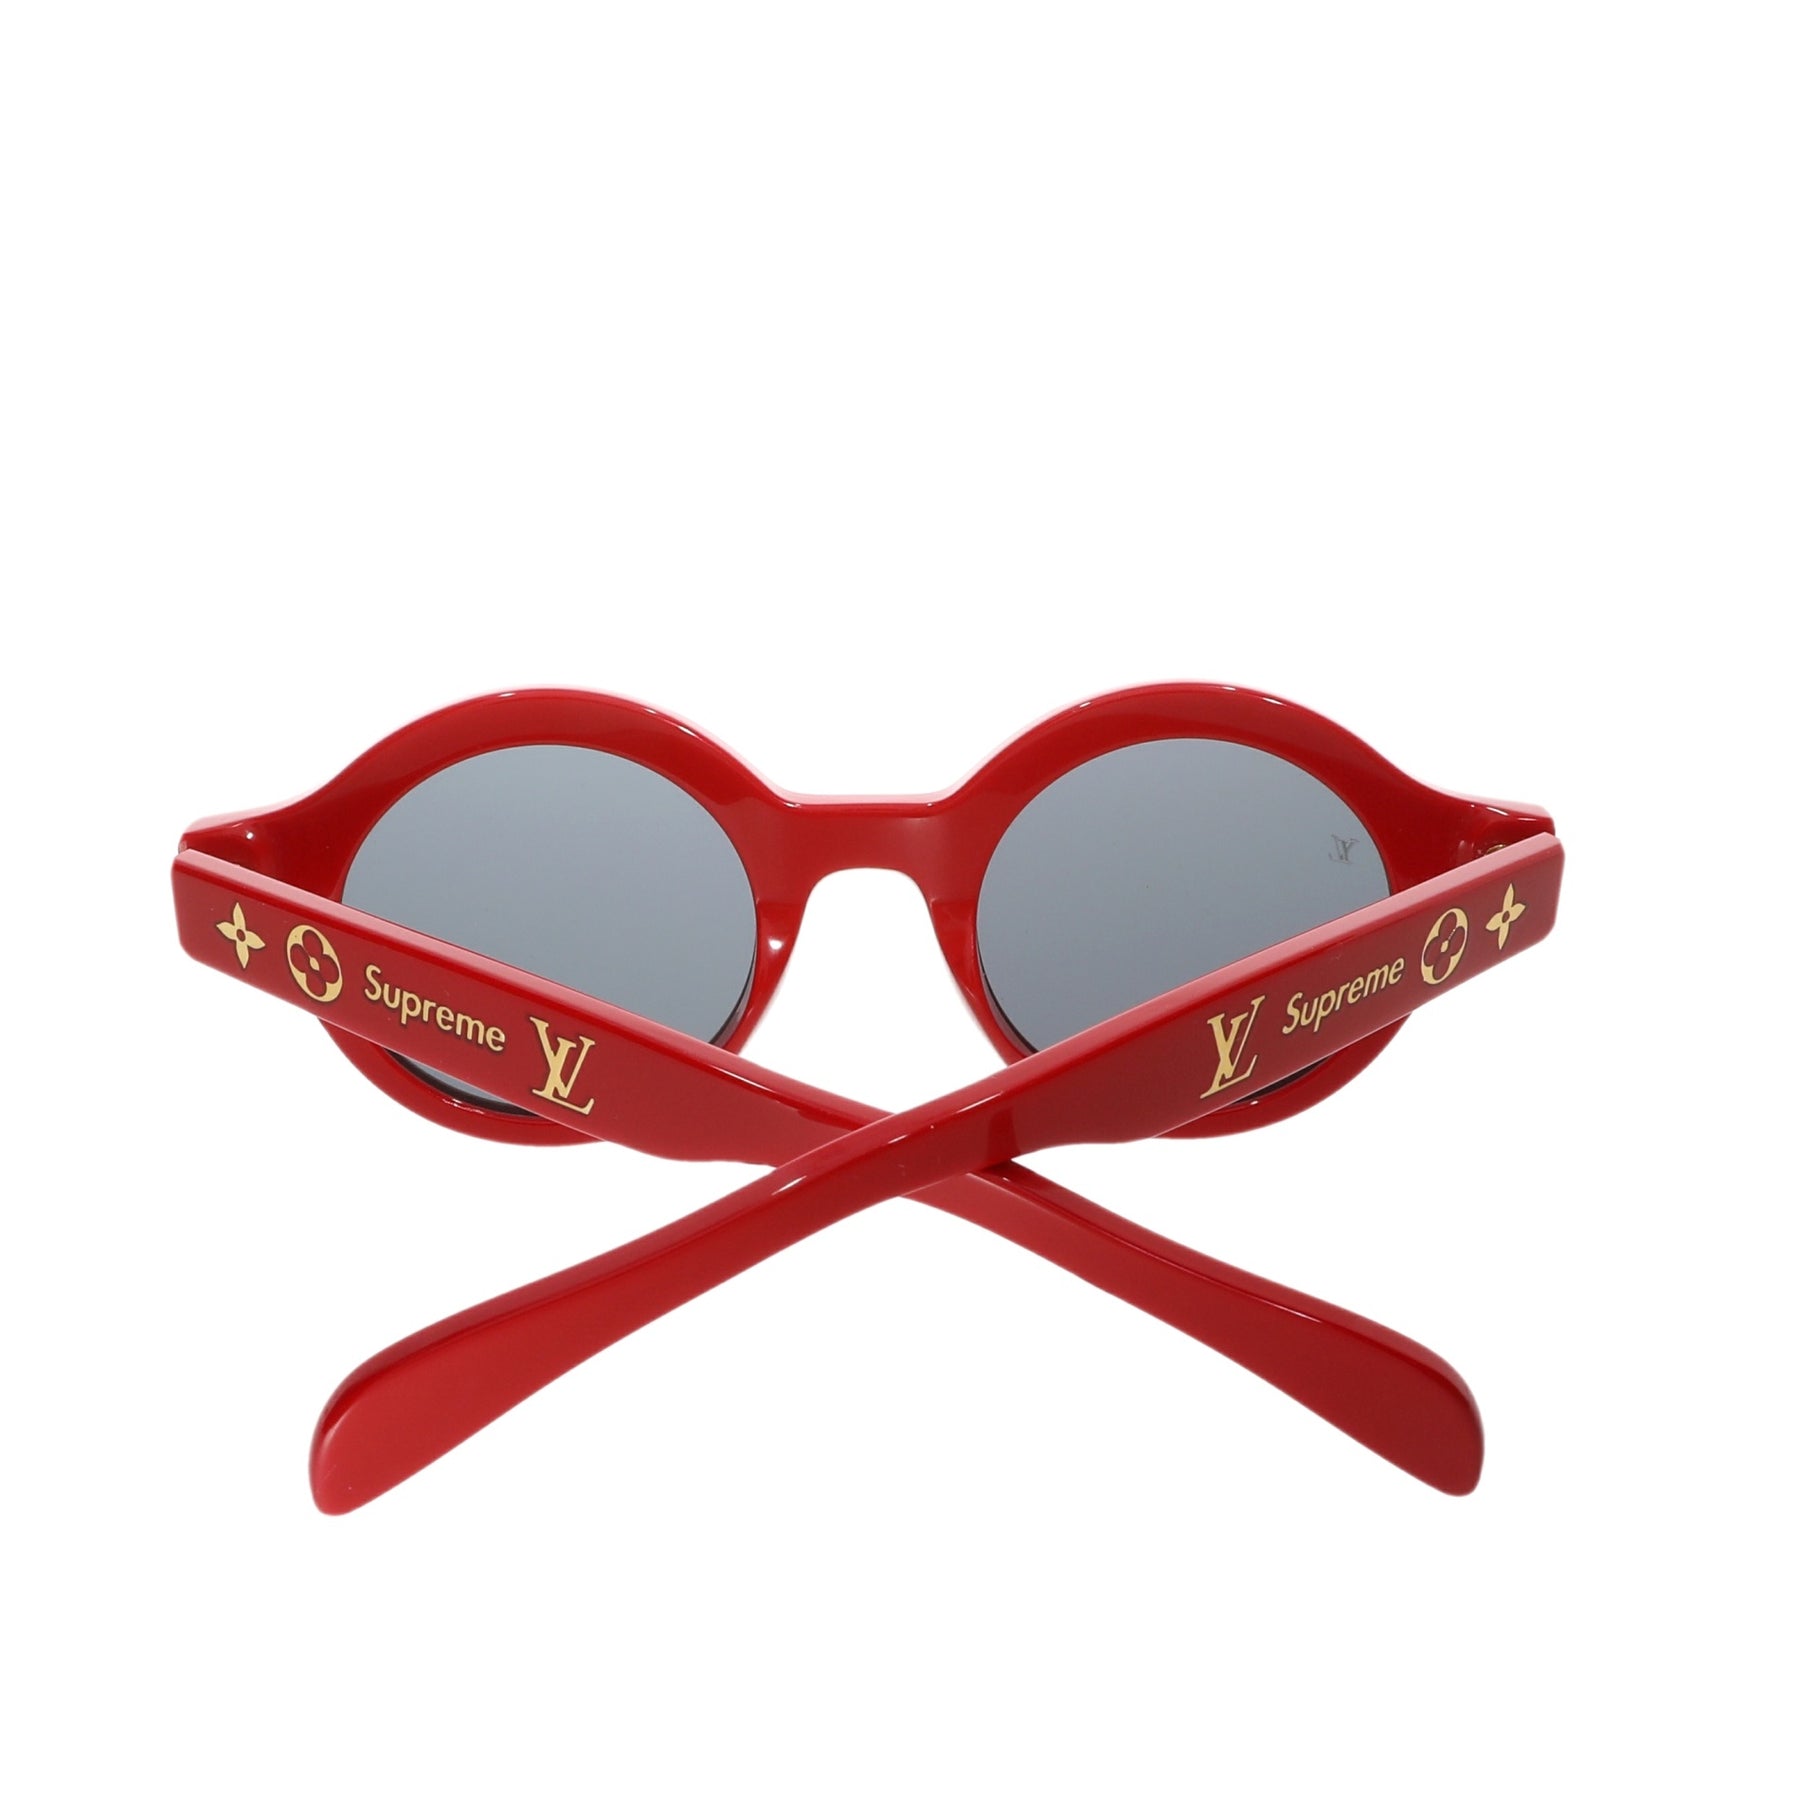 Sunglasses Louis Vuitton x Supreme Red in Plastic - 16623144